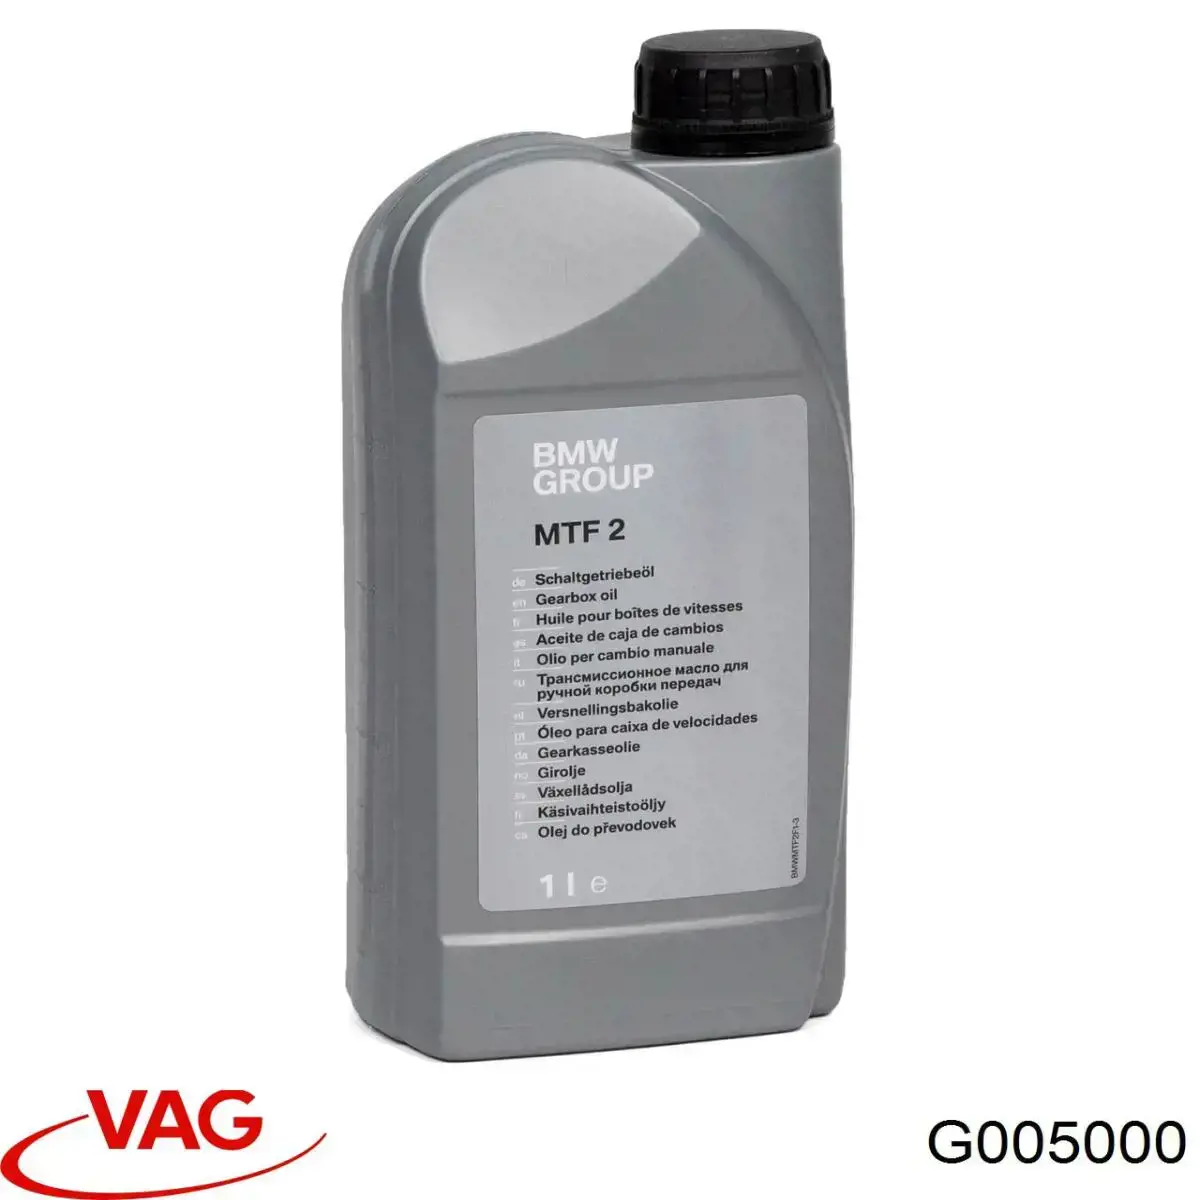  Масло трансмиссионное VAG Gear Oil 1 л (G005000)